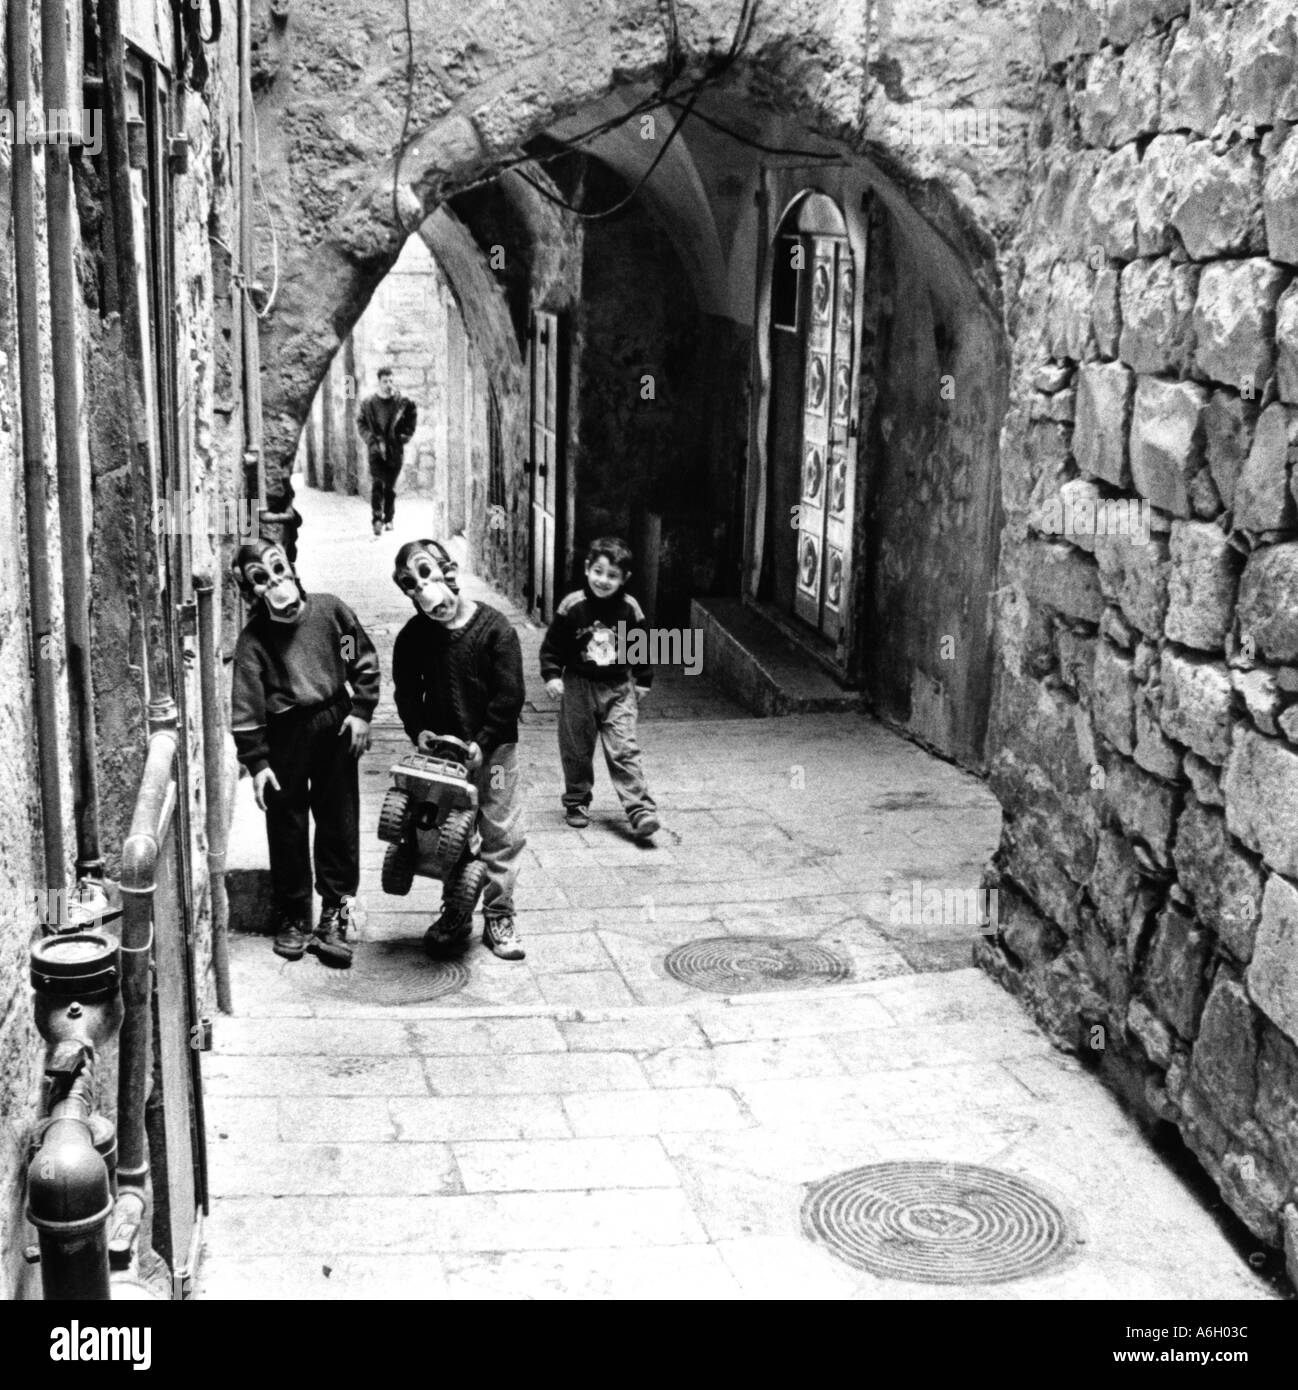 Israele Gerusalemme vecchia città 2 youg boys indossando maschere di scimmia a giocare in strada Foto Stock